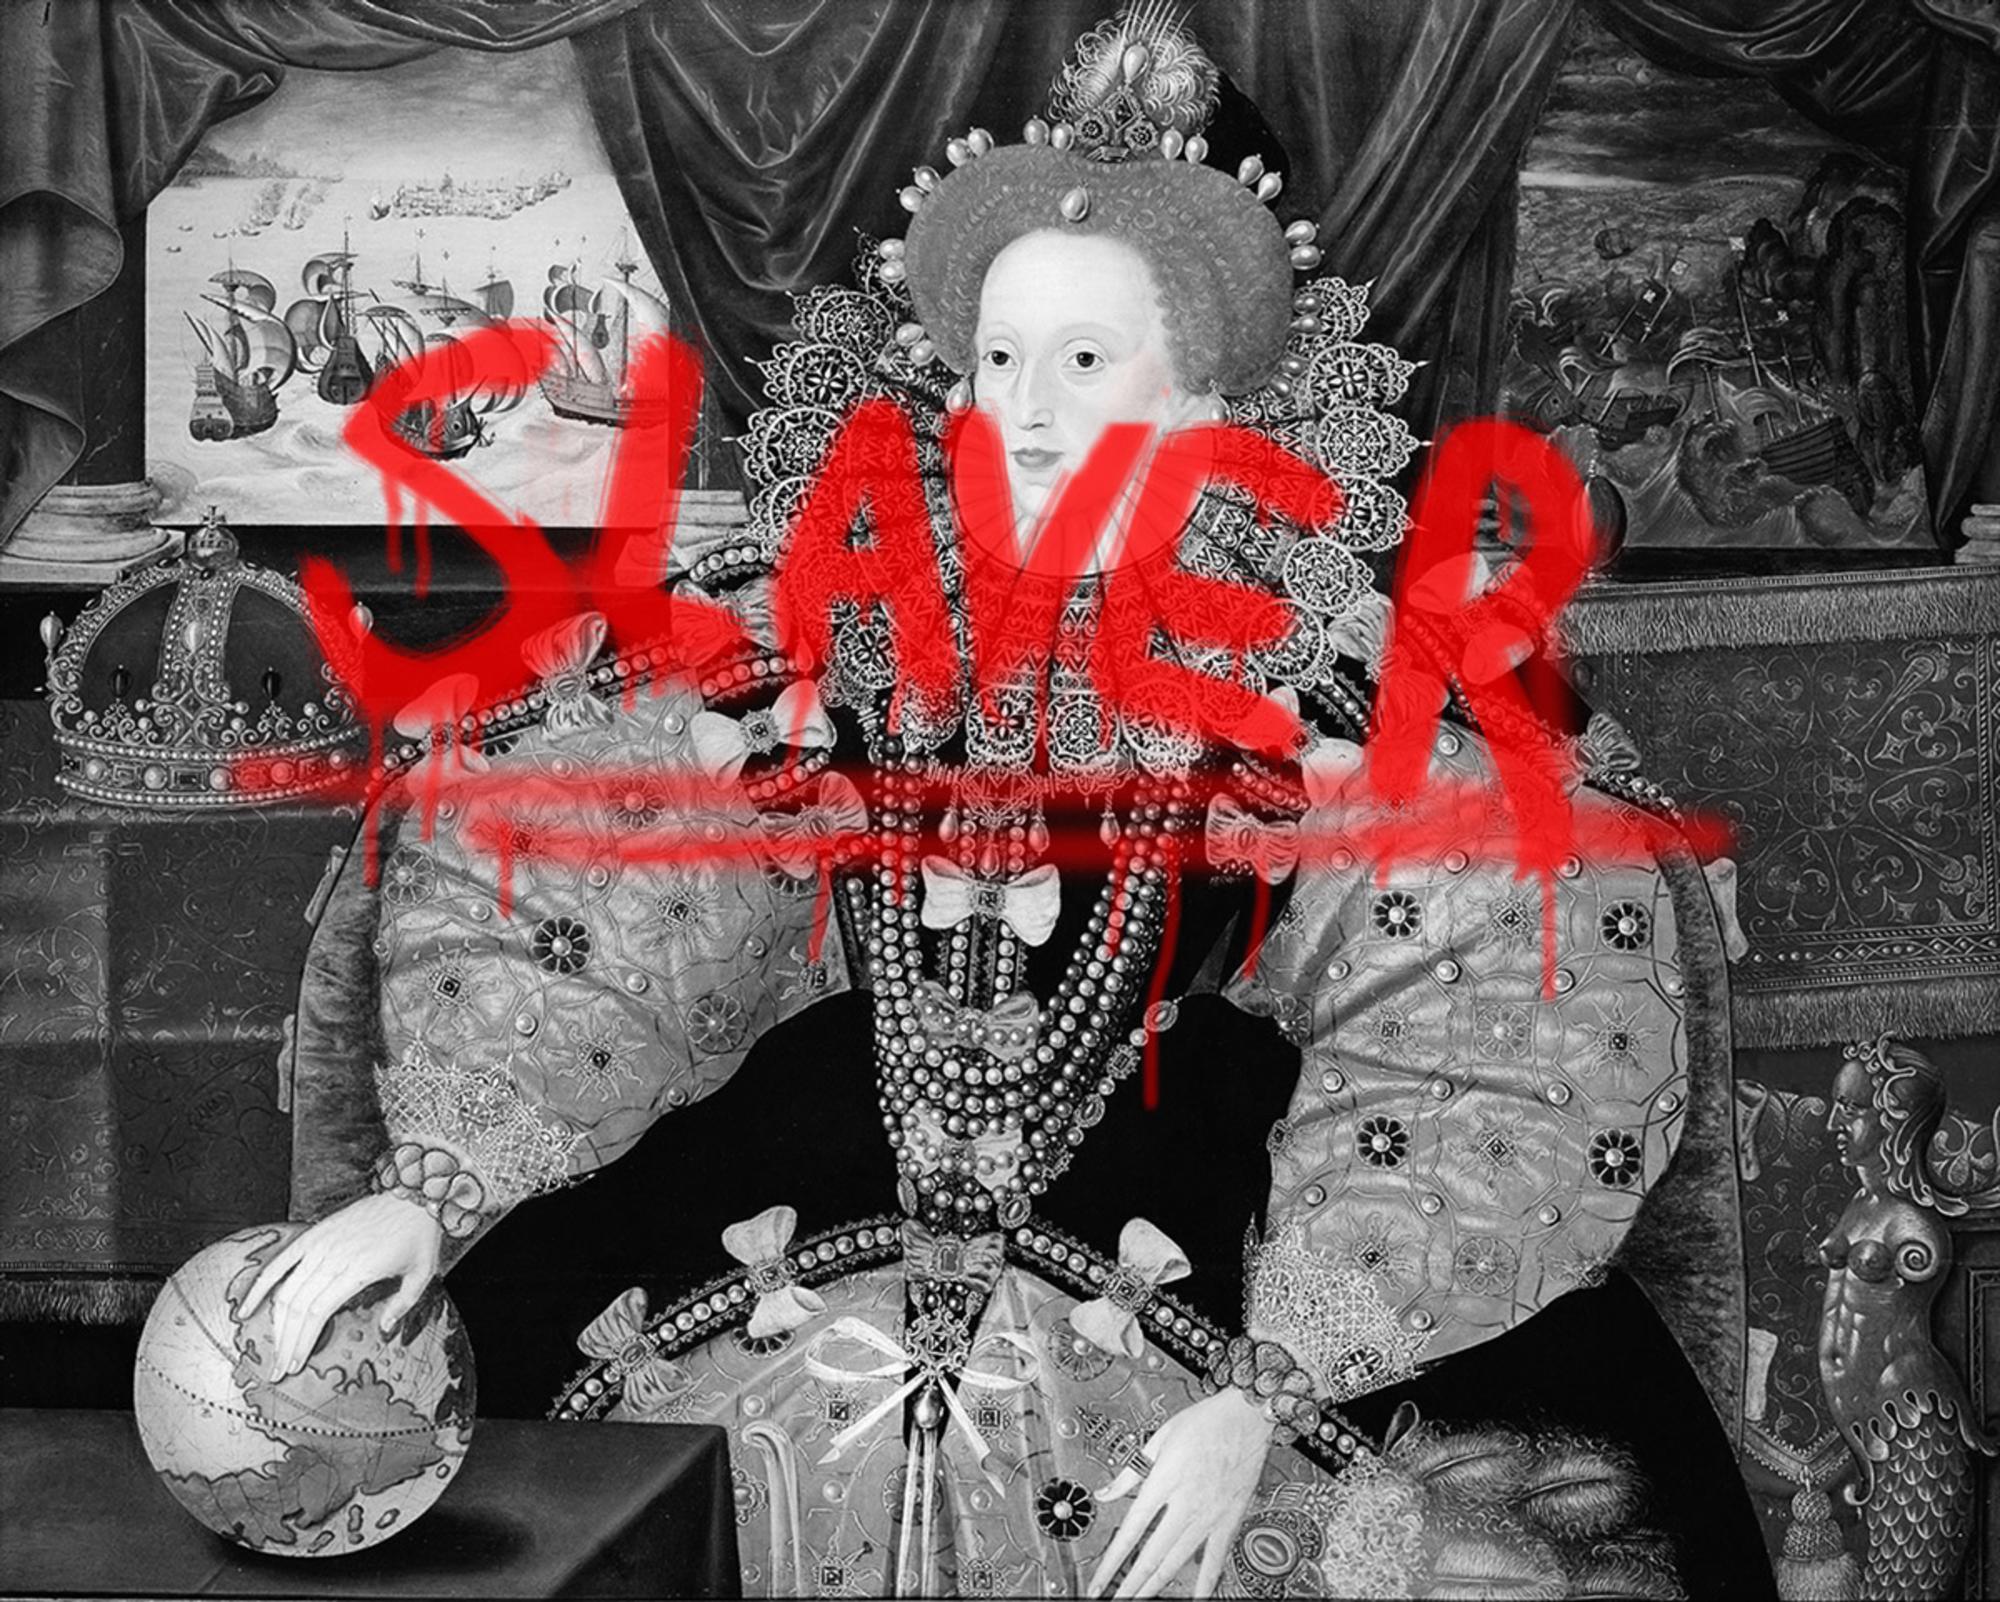 Procter no duda en tildar de “esclavista” a Isabel I y vincula los inicios de las principales instituciones culturales en el Reino Unido con el imperialismo